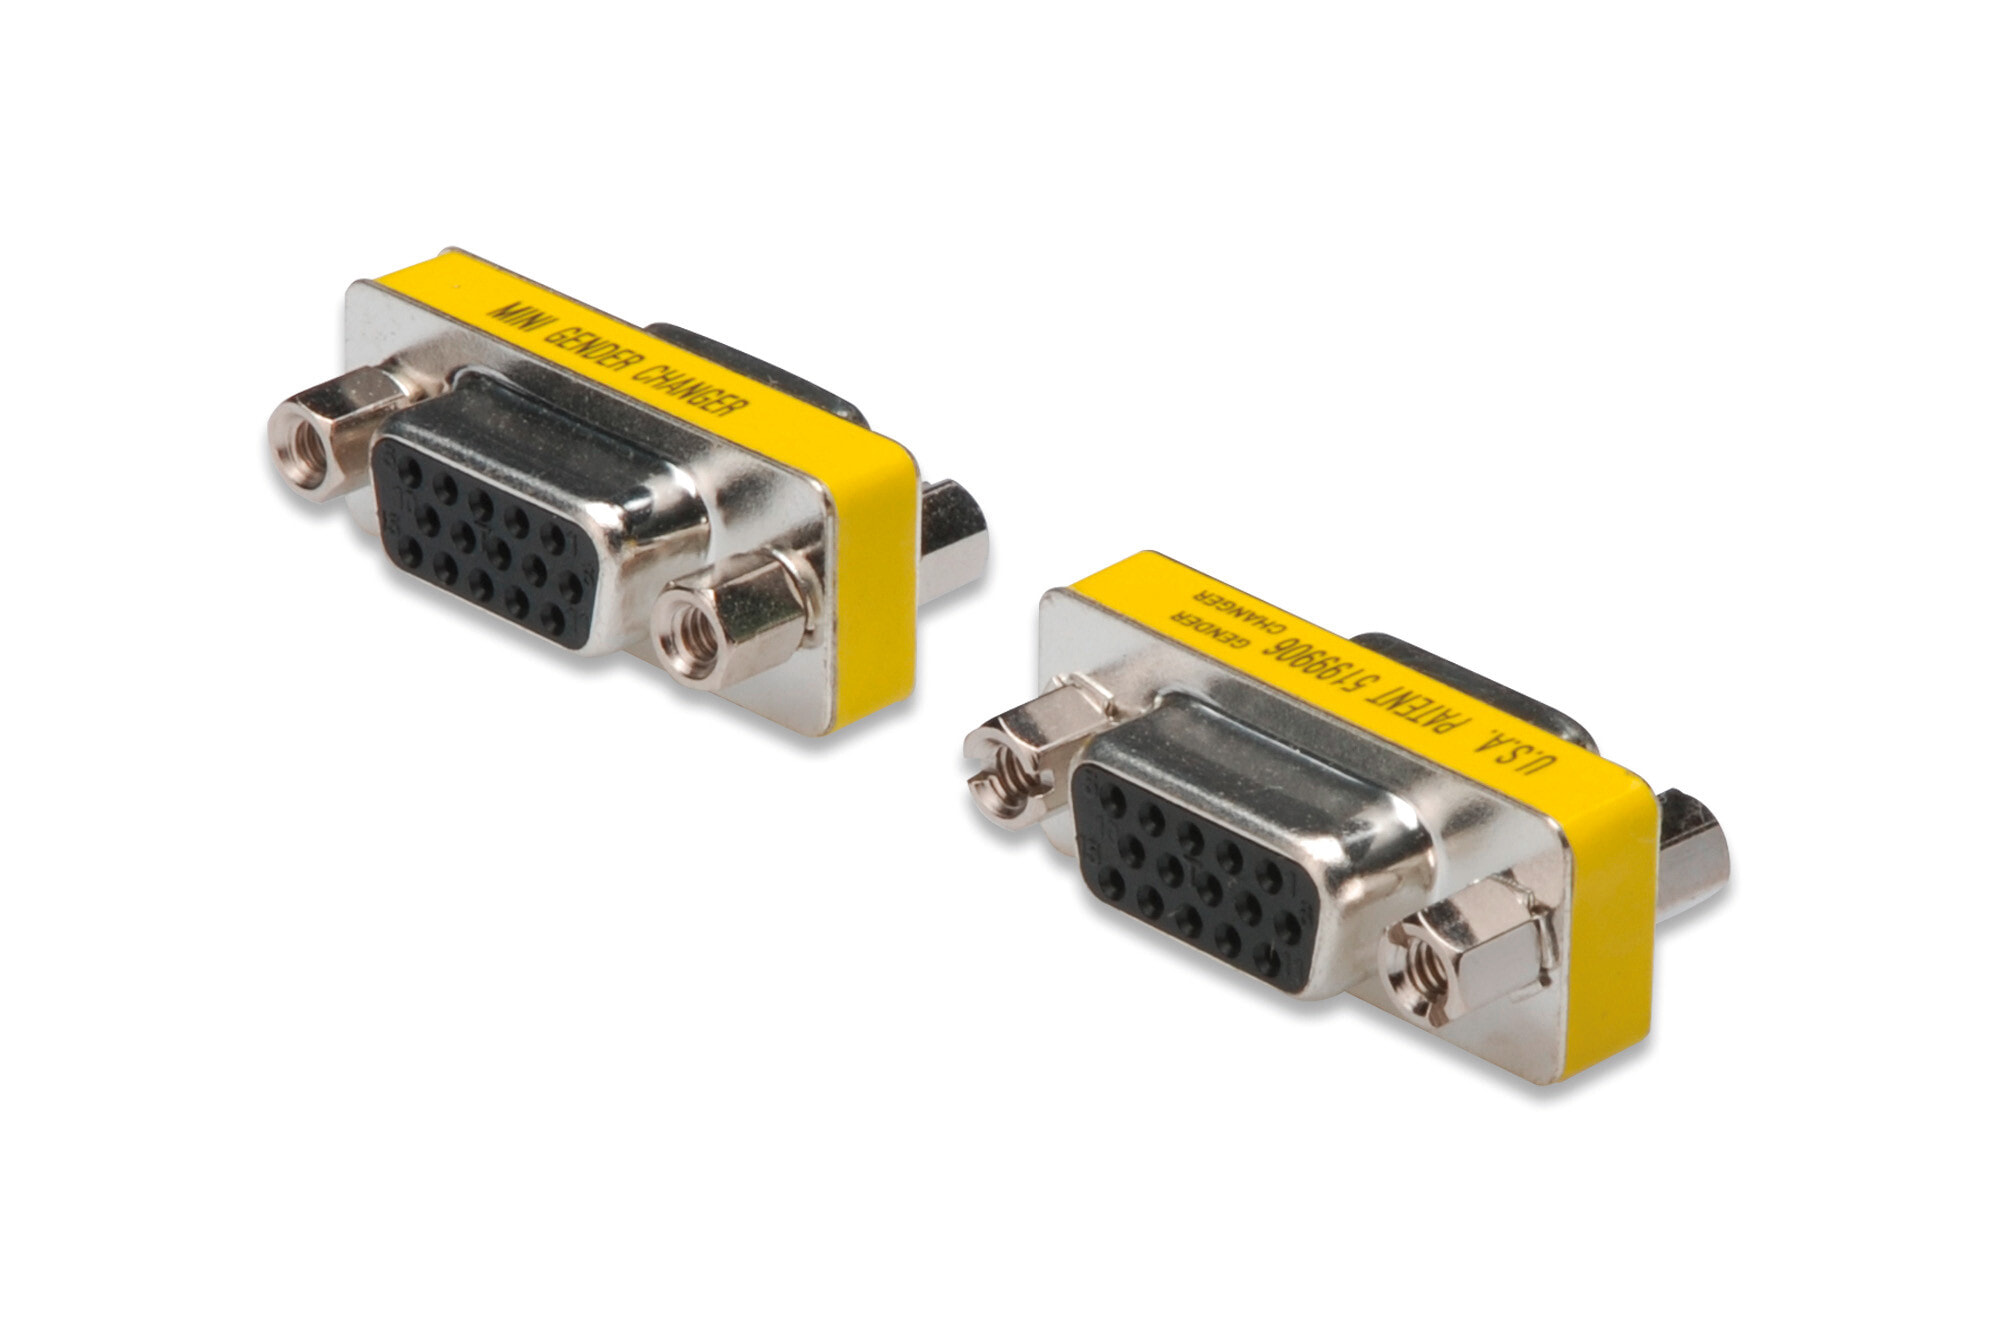 ASSMANN Electronic AK-610512-000-I кабельный разъем/переходник VGA Нержавеющая сталь, Желтый